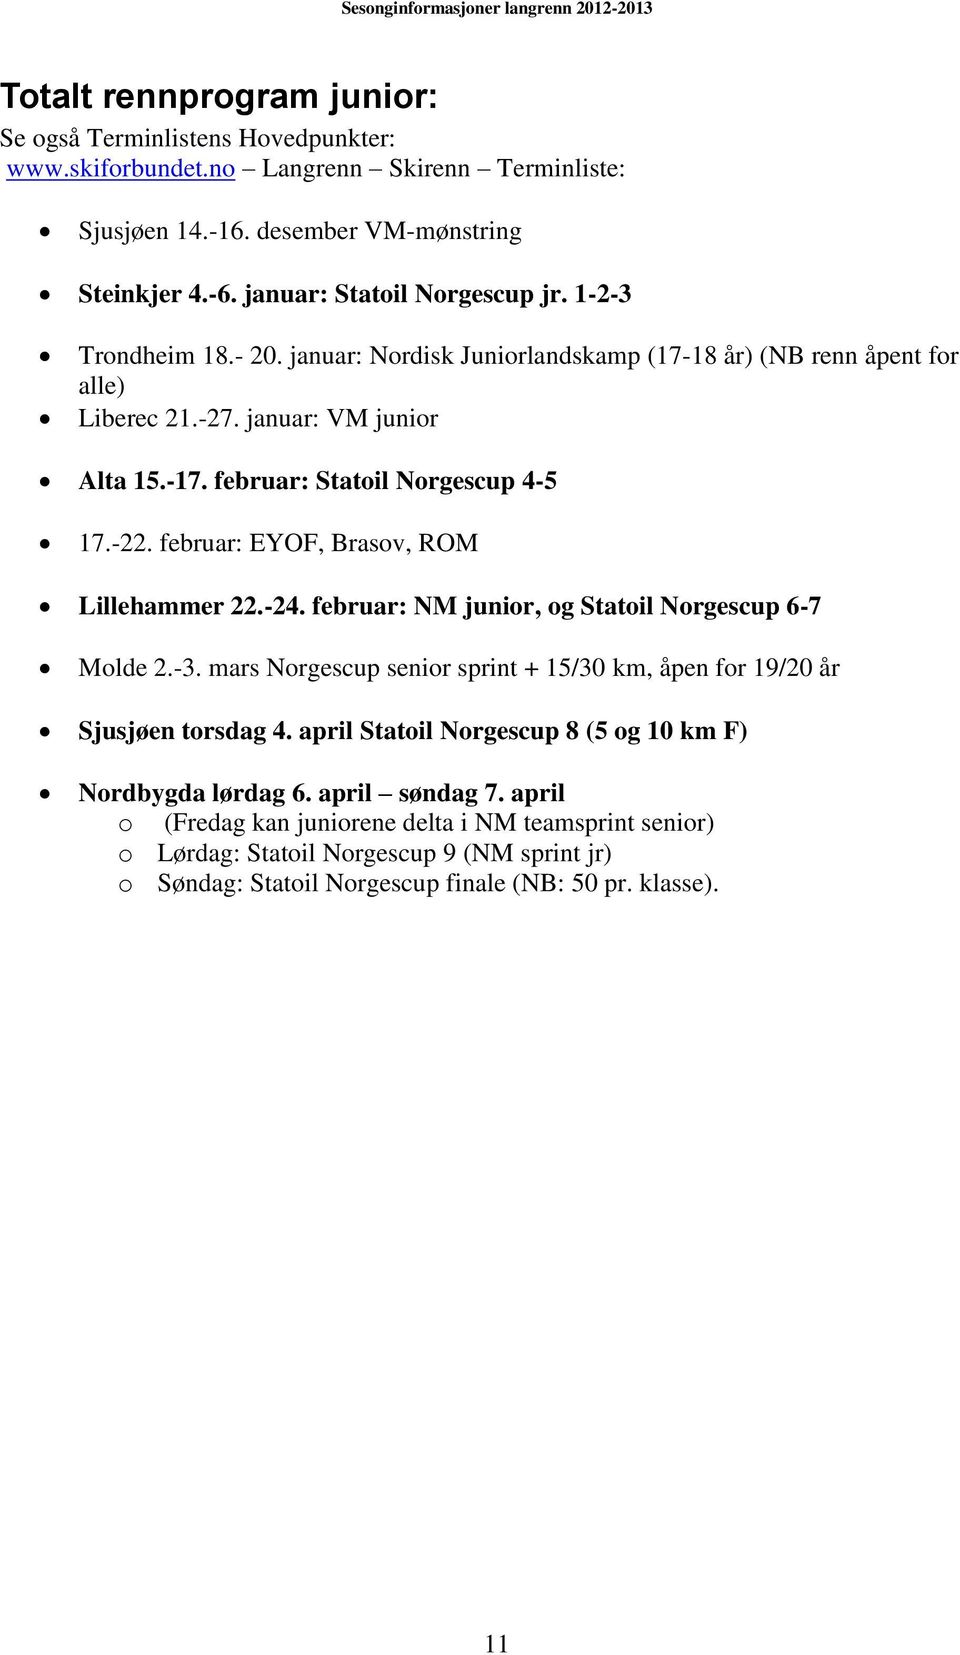 februar: EYOF, Brasov, ROM Lillehammer 22.-24. februar: NM junior, og Statoil Norgescup 6-7 Molde 2.-3. mars Norgescup senior sprint + 15/30 km, åpen for 19/20 år Sjusjøen torsdag 4.